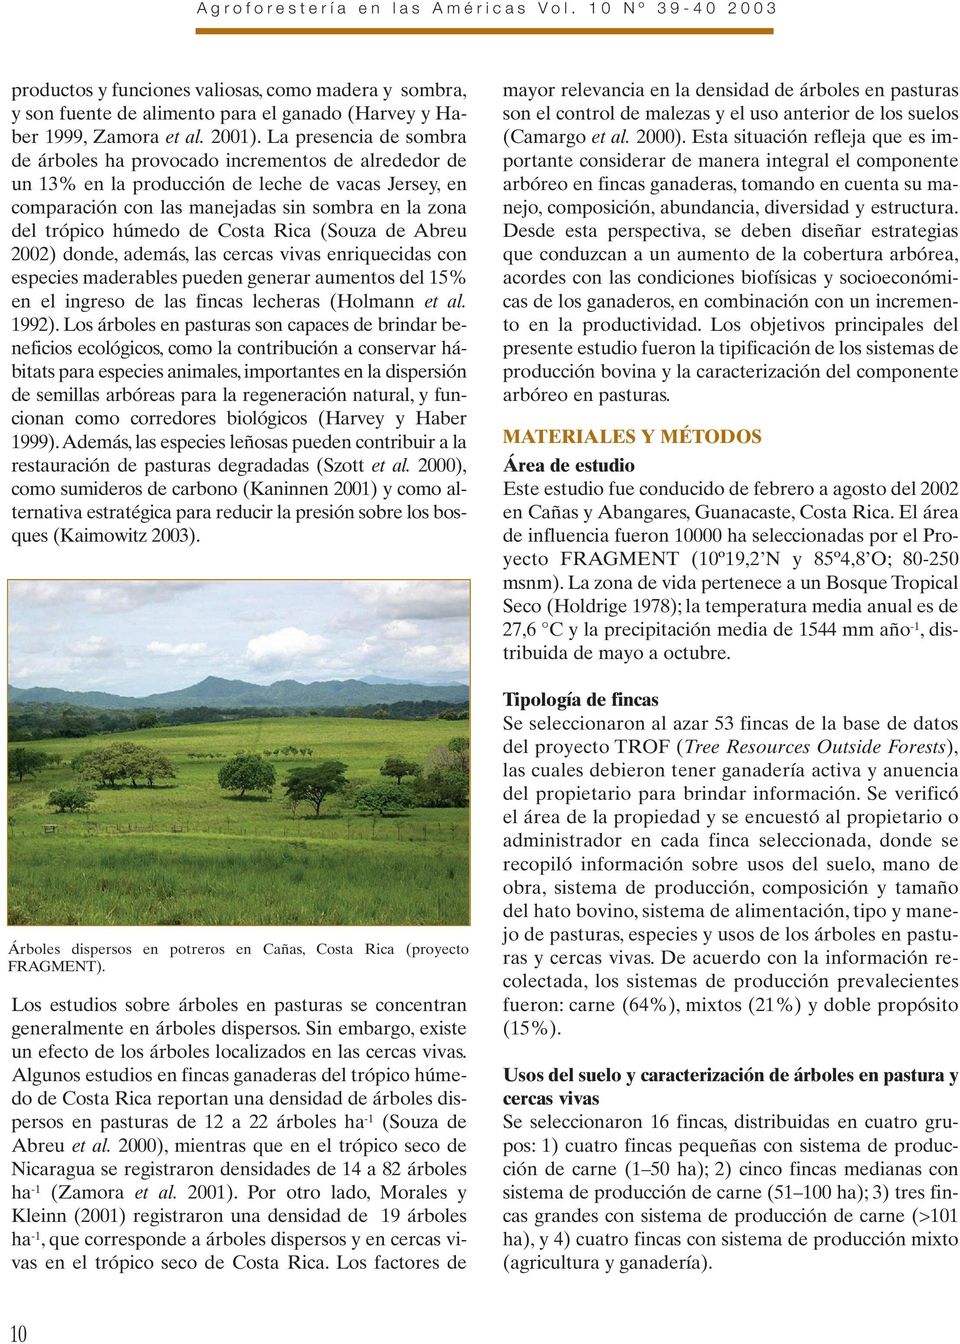 de Costa Rica (Souza de Abreu 2002) donde, además, las cercas vivas enriquecidas con especies maderables pueden generar aumentos del 15% en el ingreso de las fincas lecheras (Holmann et al. 1992).